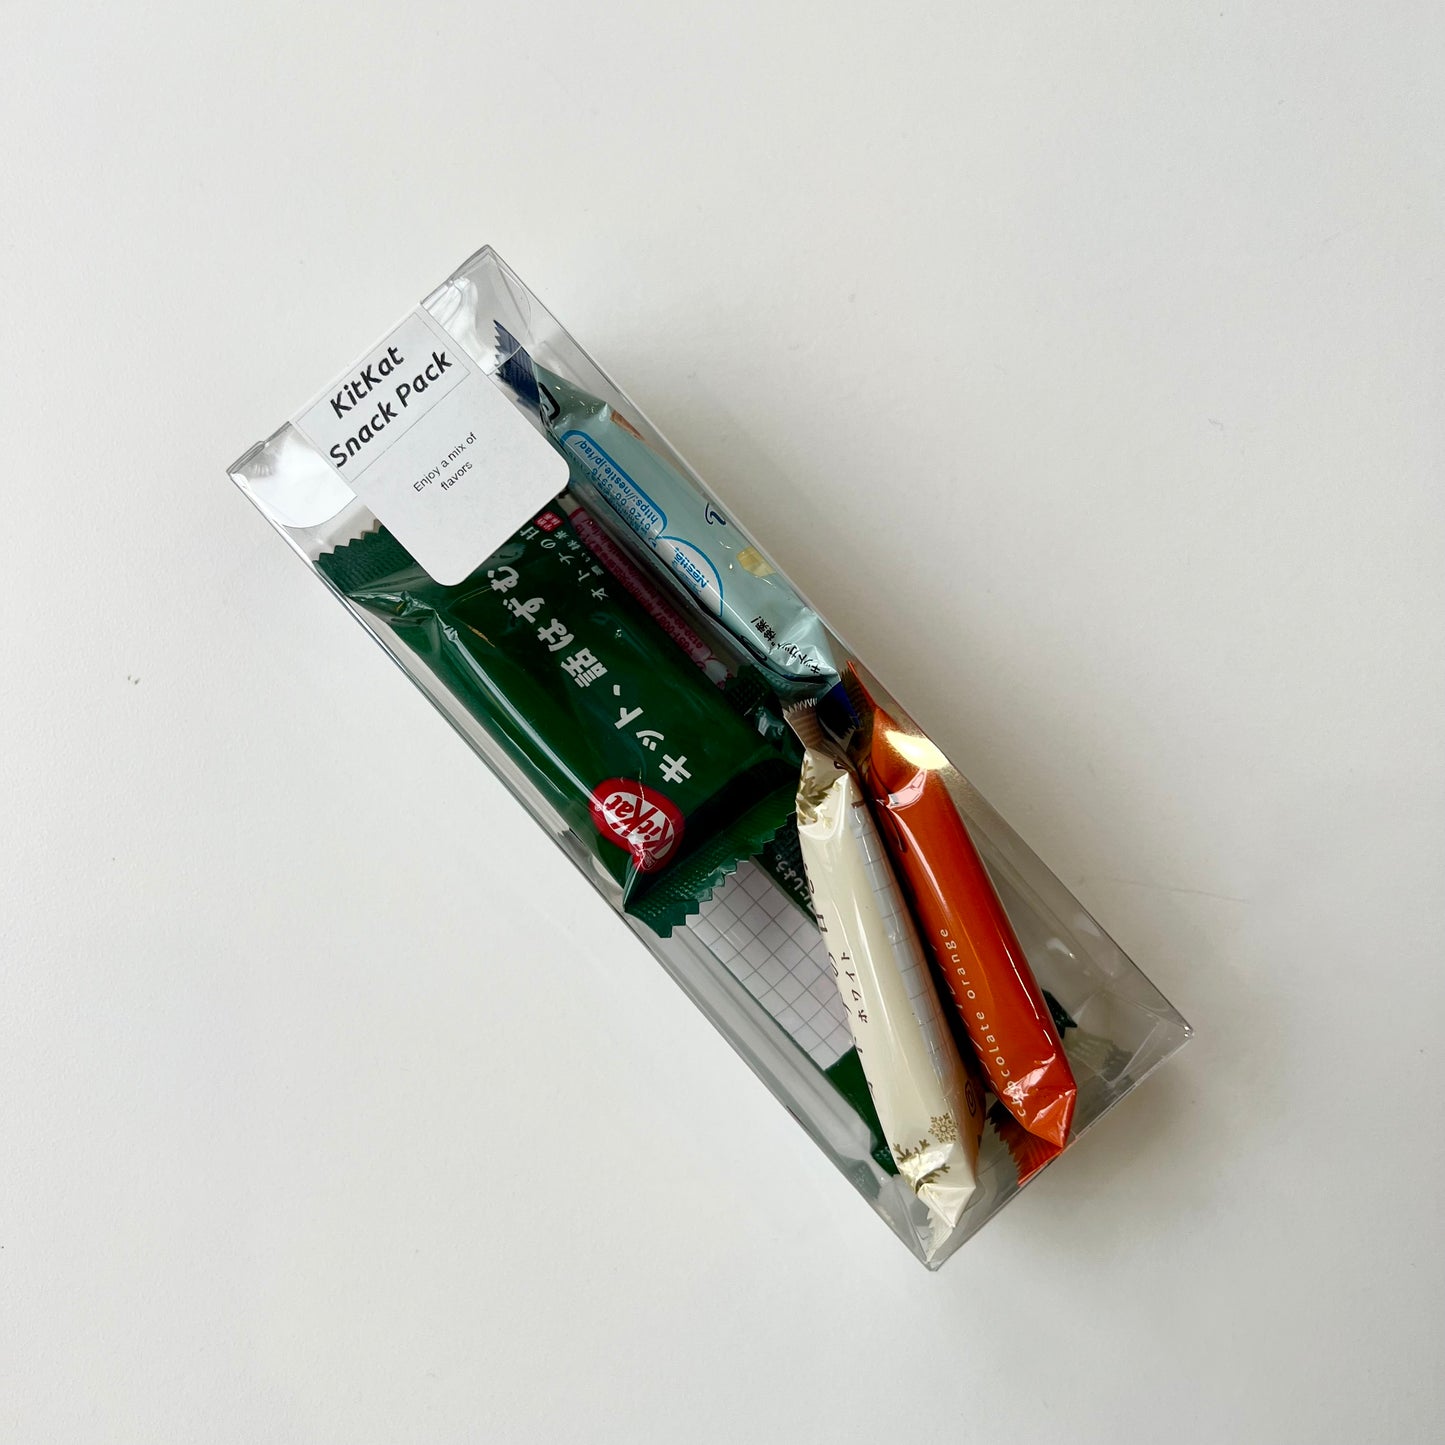 KitKat Sampler pack